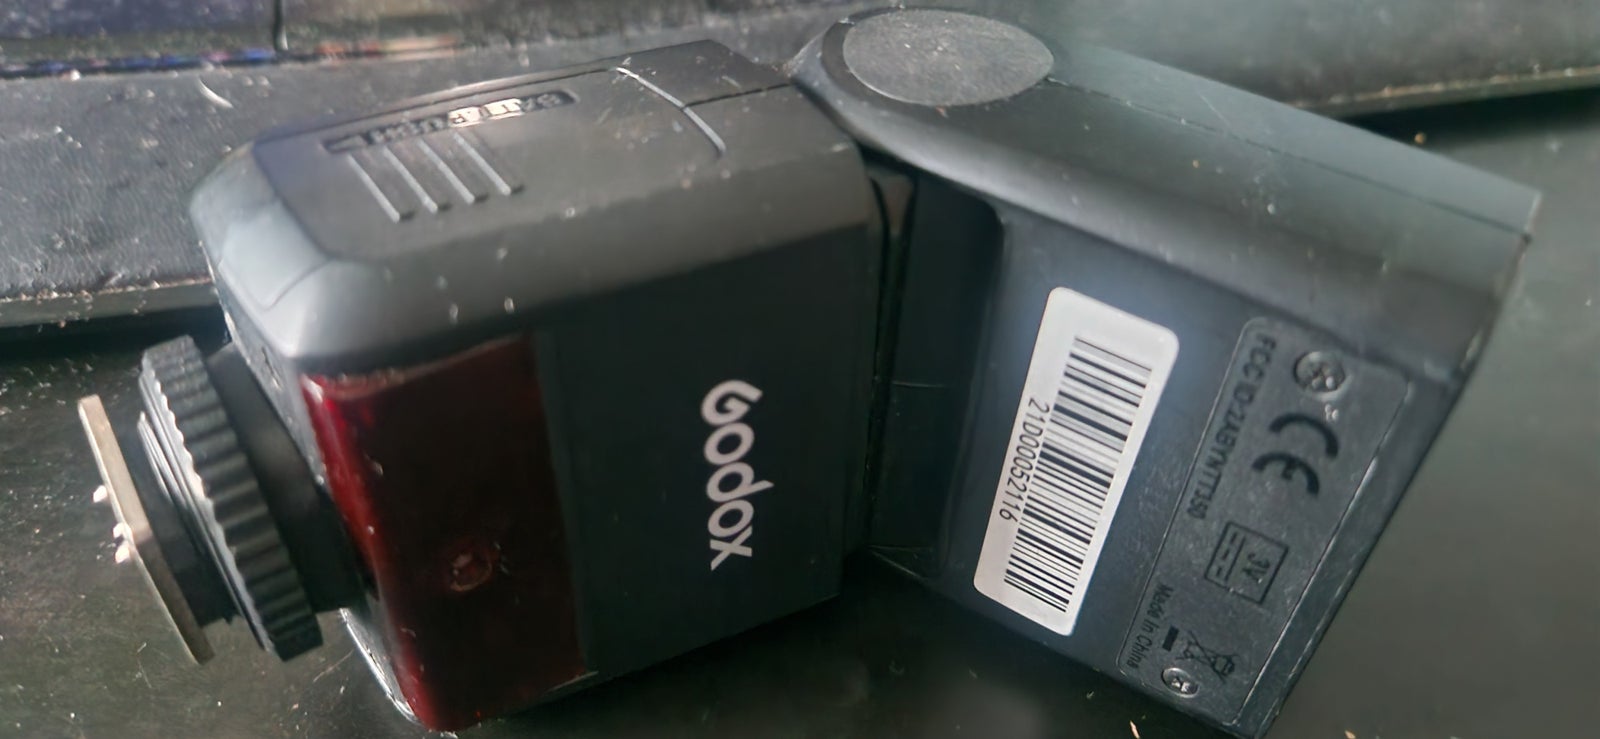 Godox for Nikon, TT350n, Perfekt